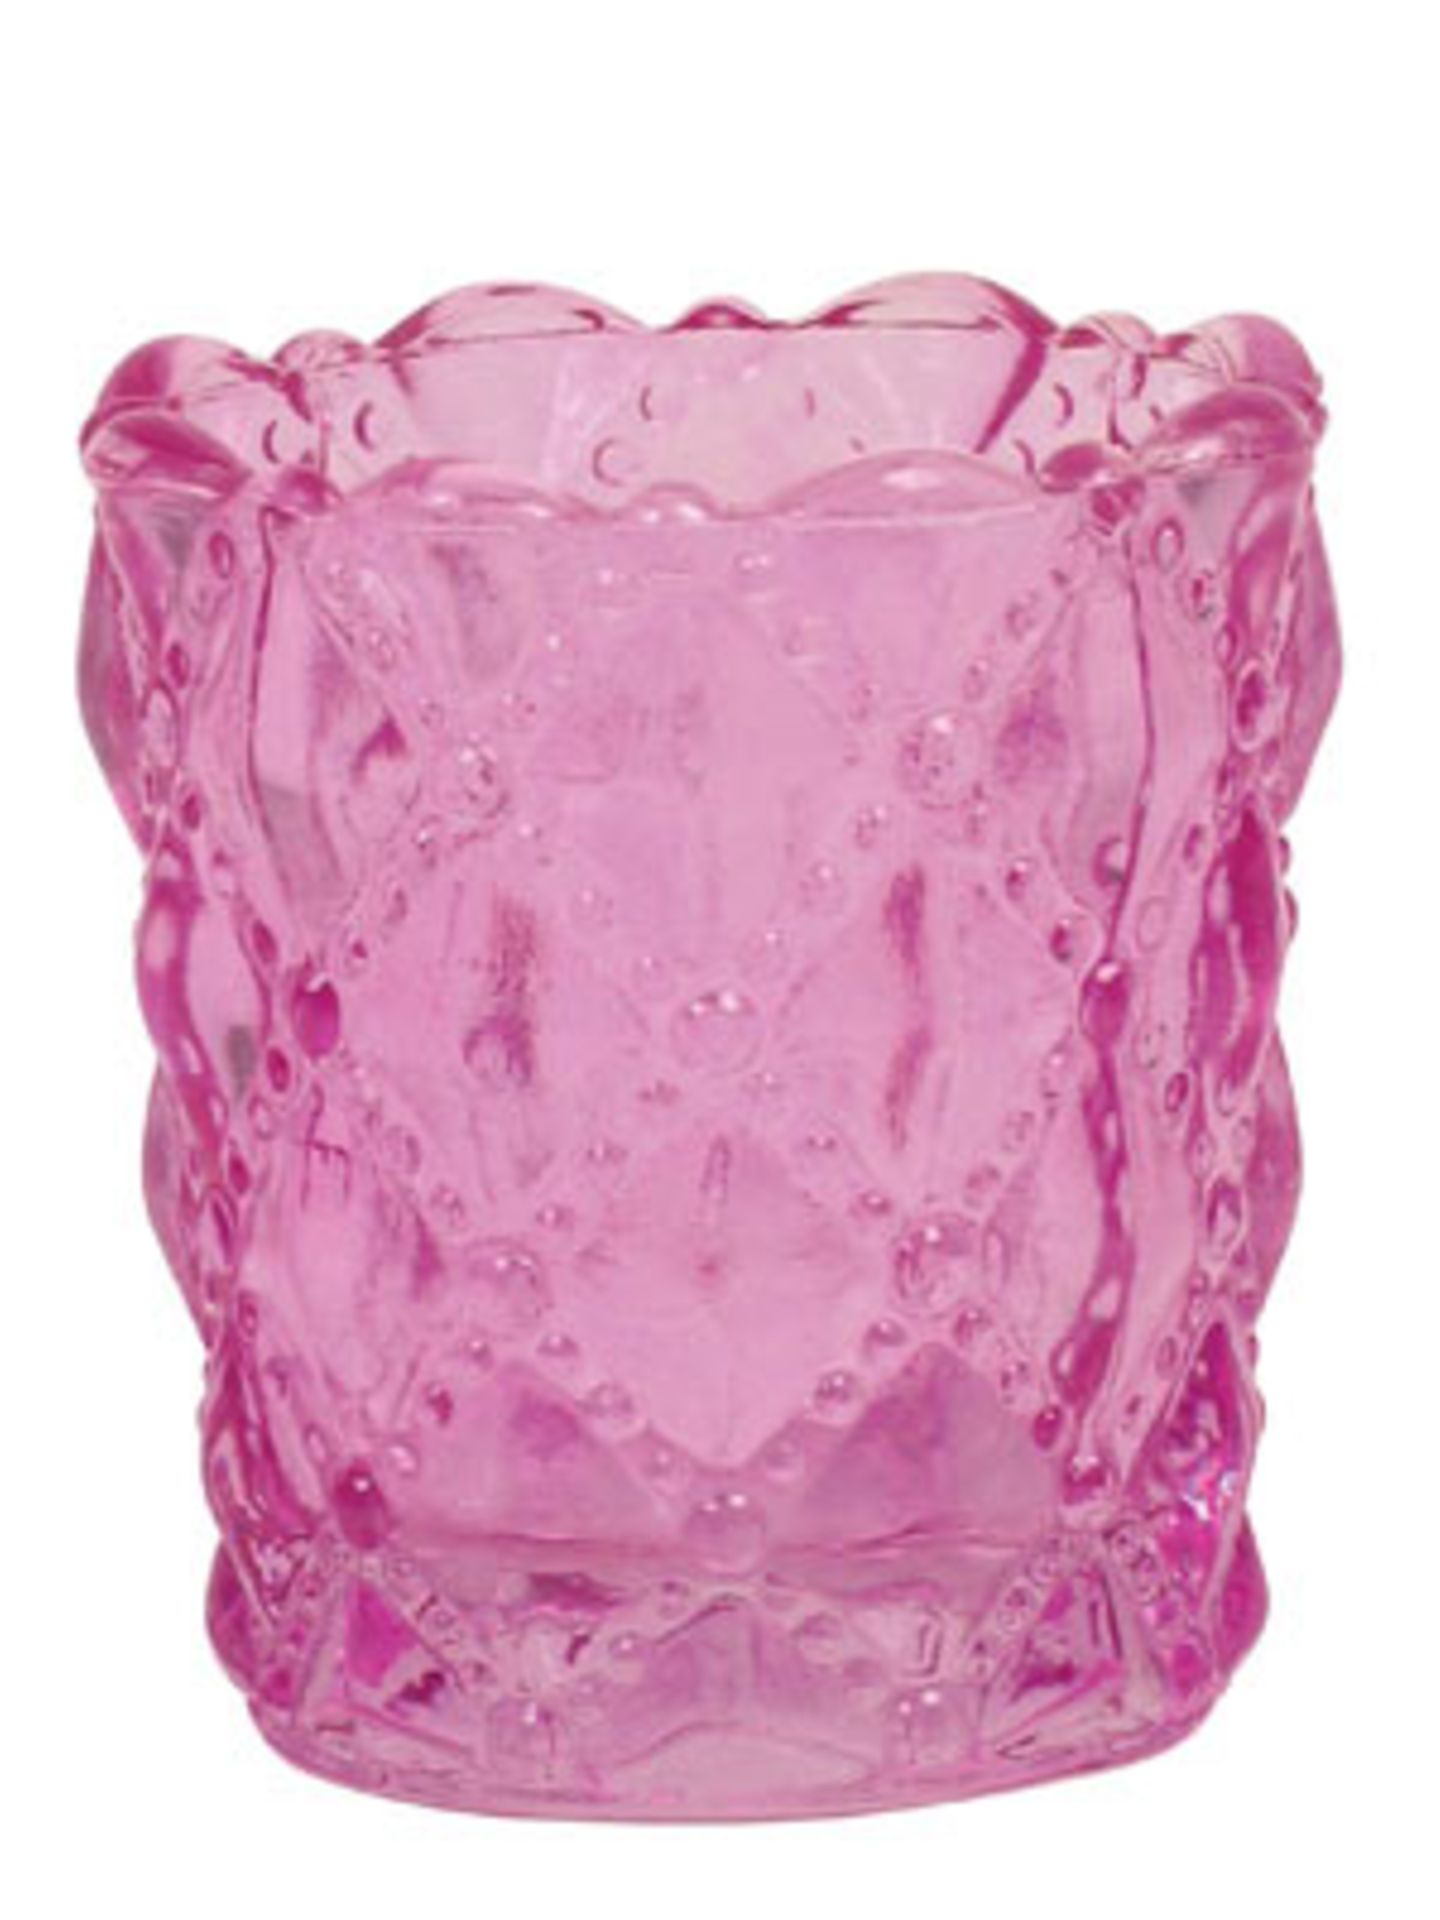 Teelicht    Hübsches, rosafarbenes Teelichter in Ornament-Optik. Auch in pink, grün und türkis erhältlich.    Preis: ca. 3 Euro, über  www.bertine.de